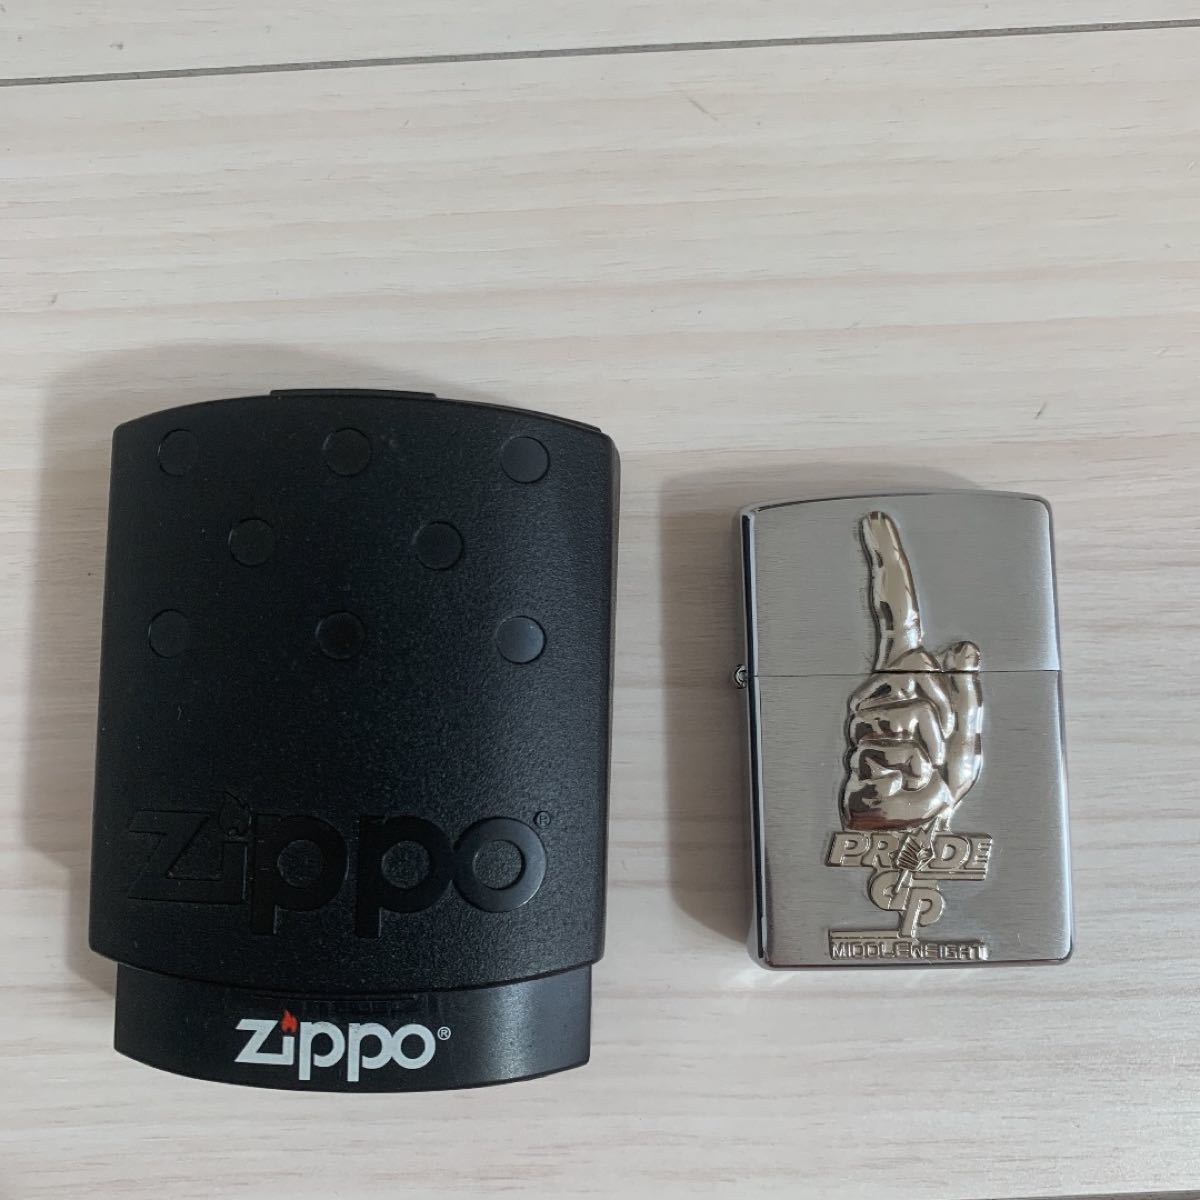 【レア物】PRIDE zippo ジッポライター